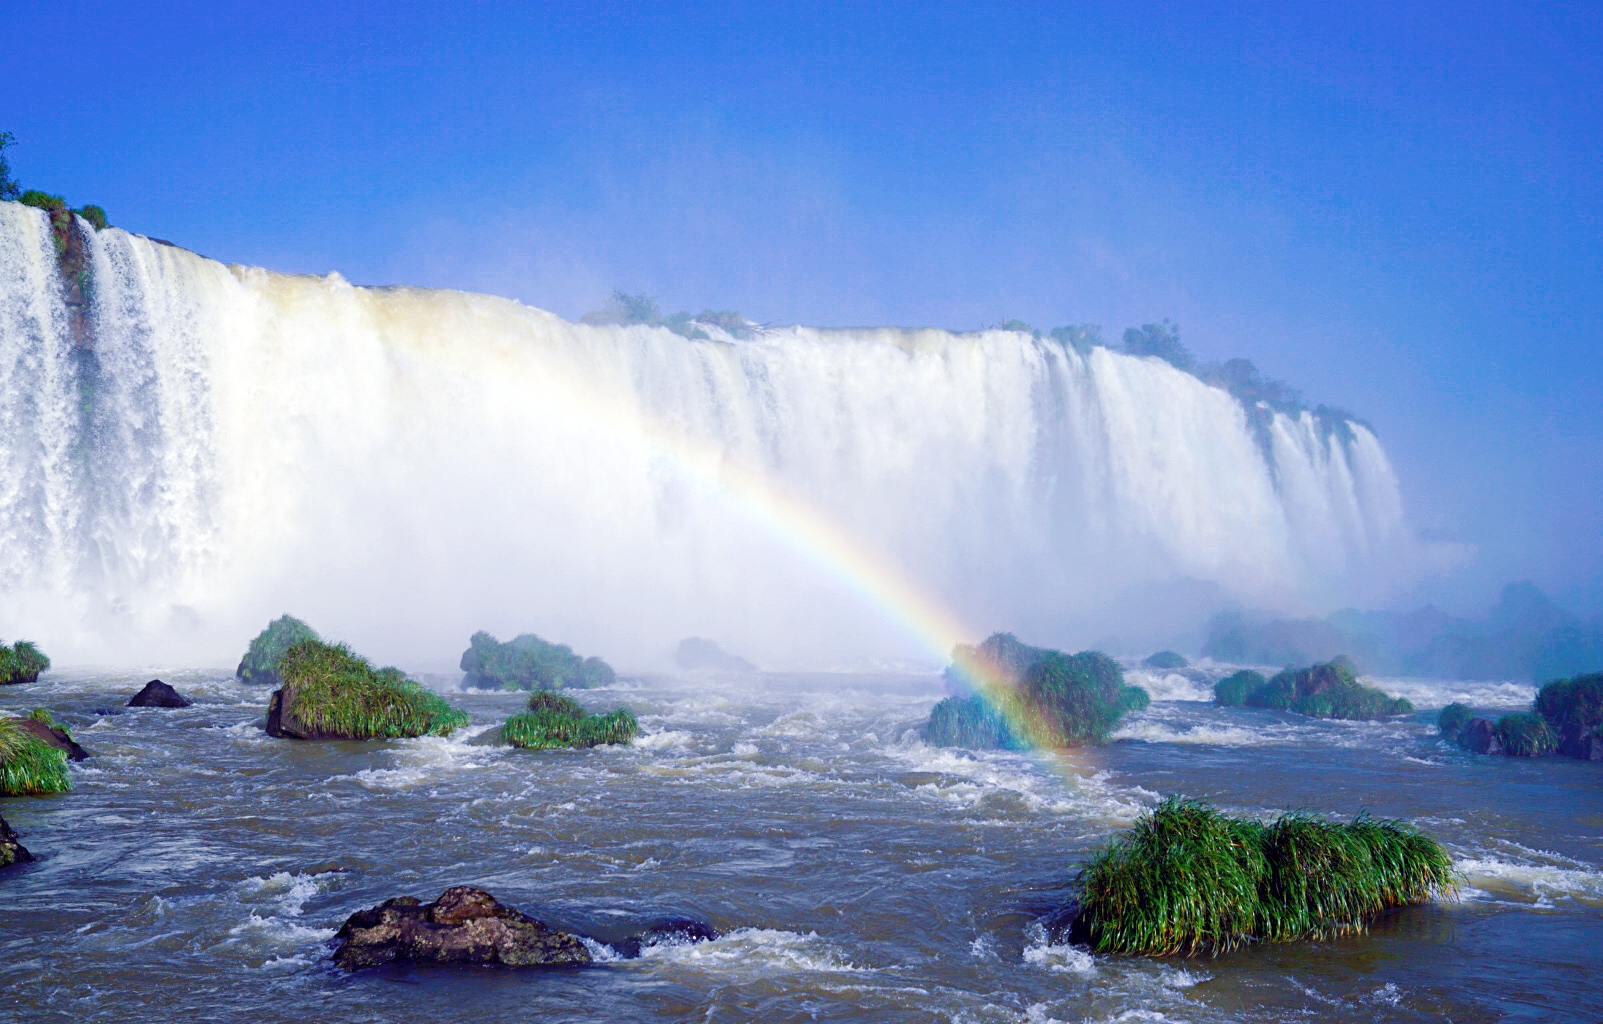 令人震撼的伊瓜苏公园大瀑布!